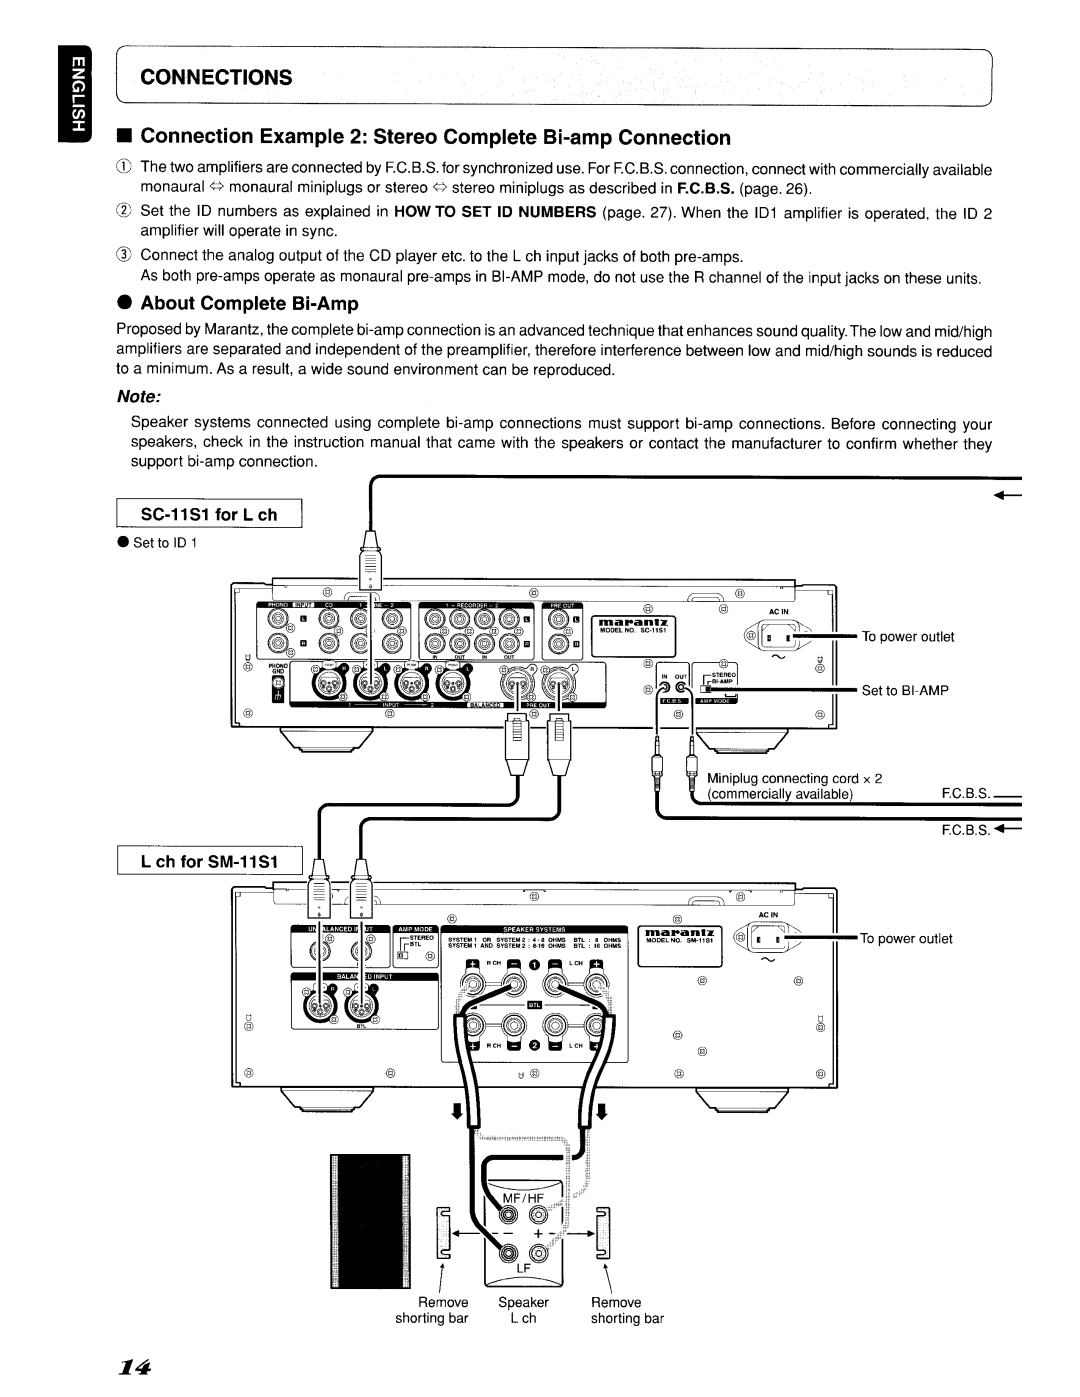 Marantz 642SC11S1, SC-11S1 manual Connections, About Complete Bi-Amp 